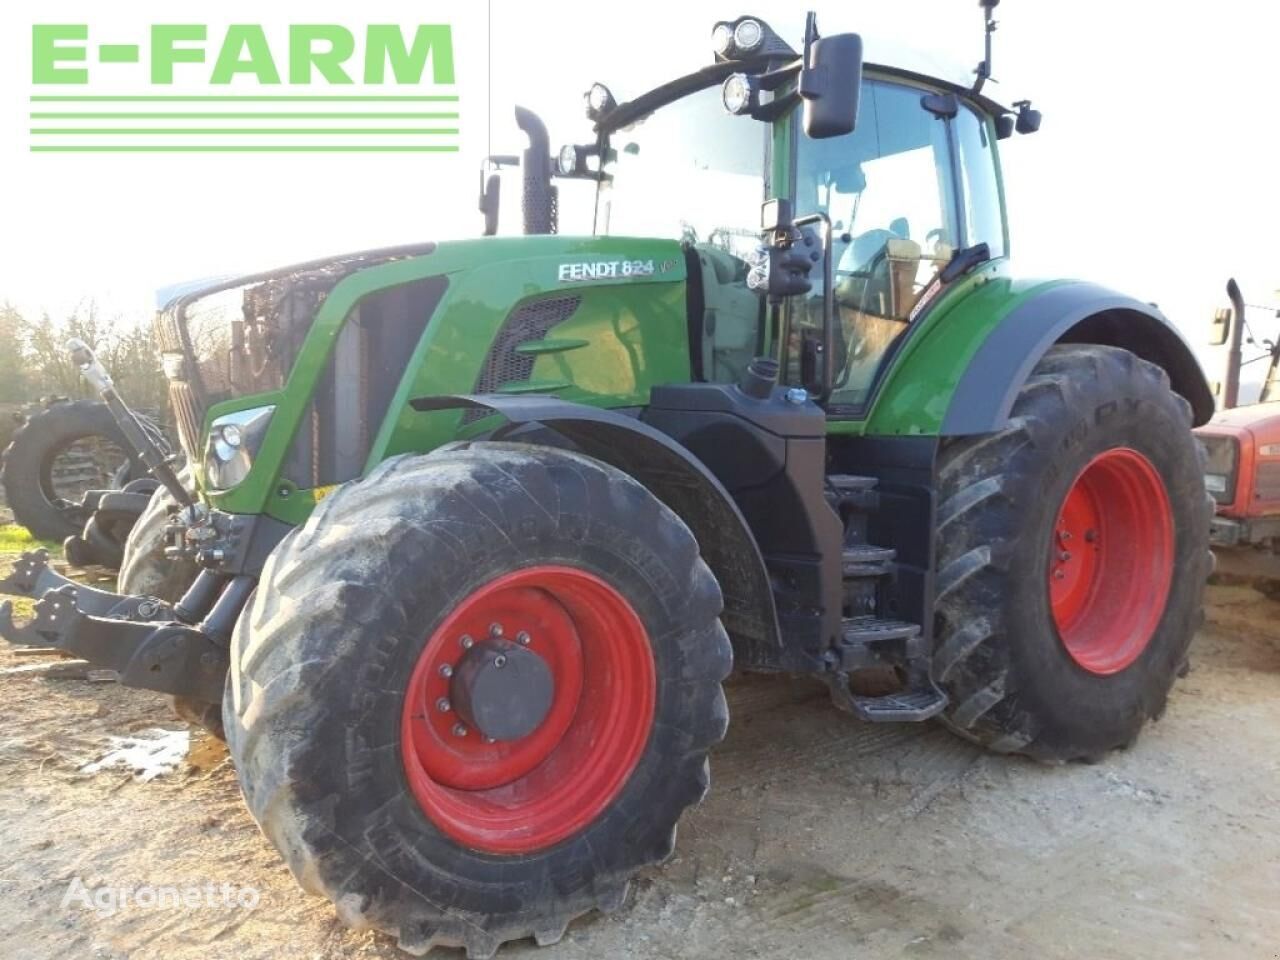 Fendt 824 profi + wheel tractor